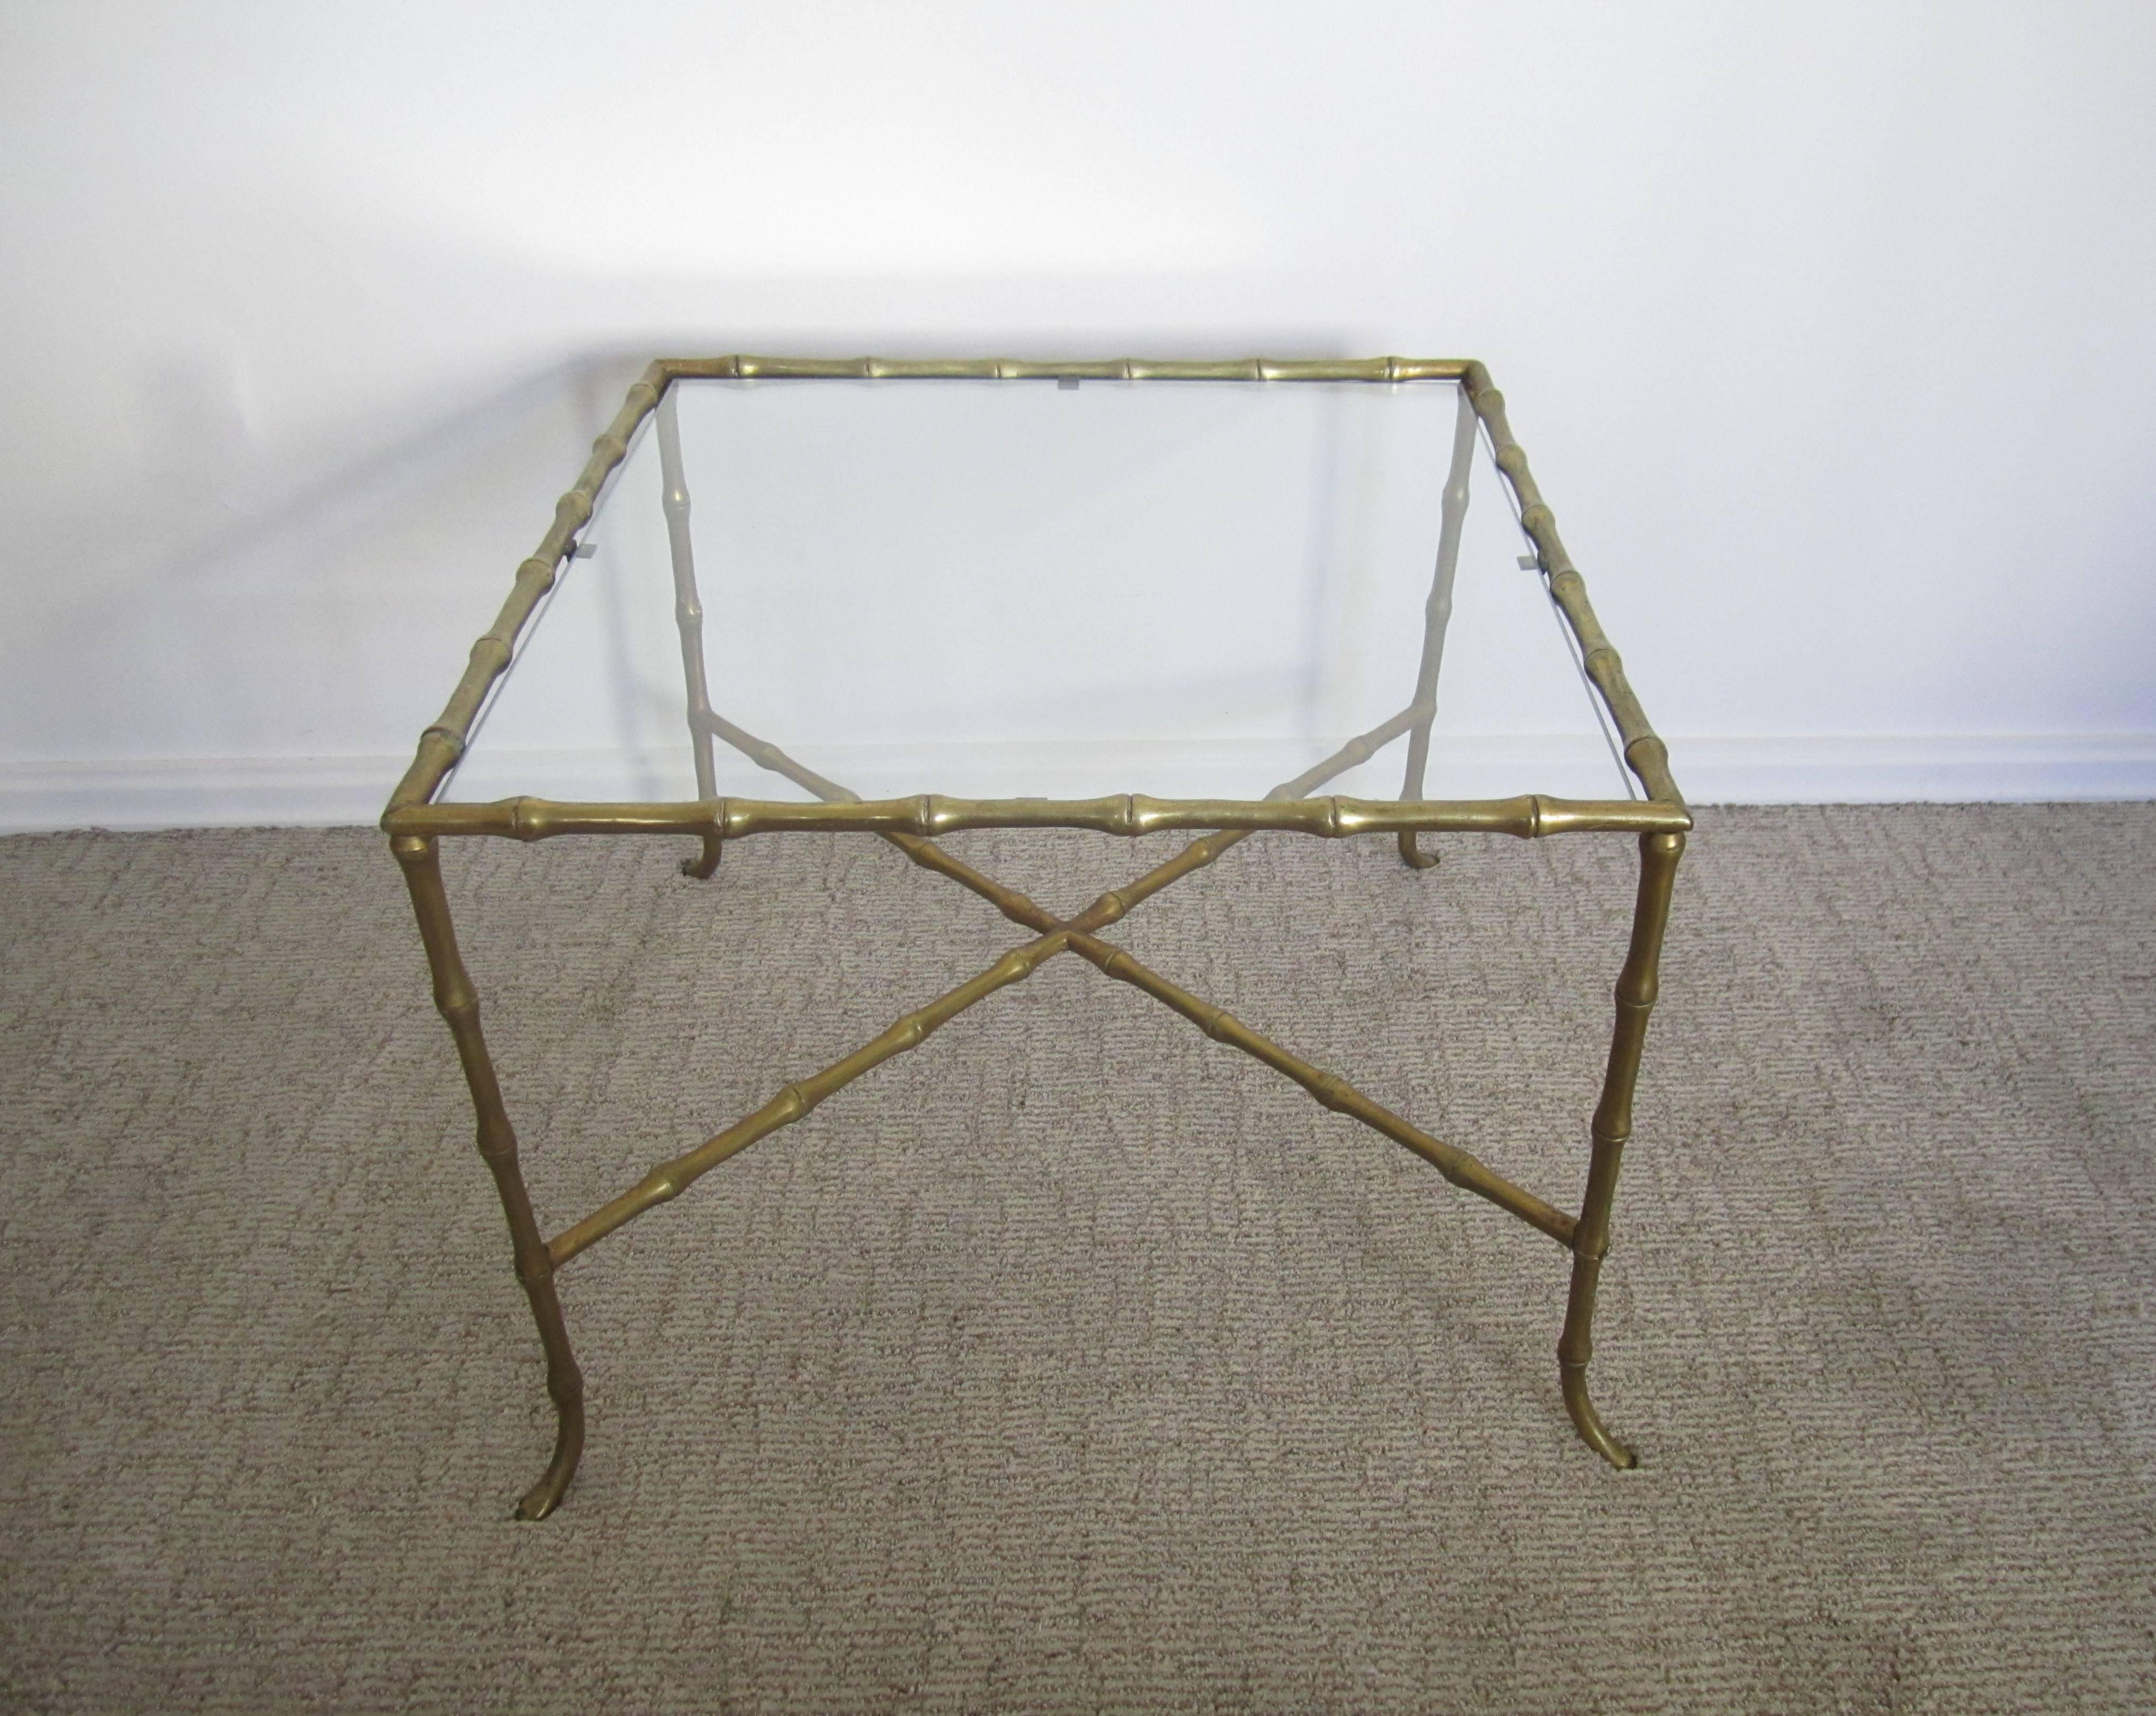 Importante table d'appoint ou de chevet en laiton et verre avec cadre en bambou, attribuée à la Maison Baguès, France, vers le milieu du XXe siècle. Le cadre est en laiton massif. La table est dotée d'une base en X et d'une quincaillerie à vis en